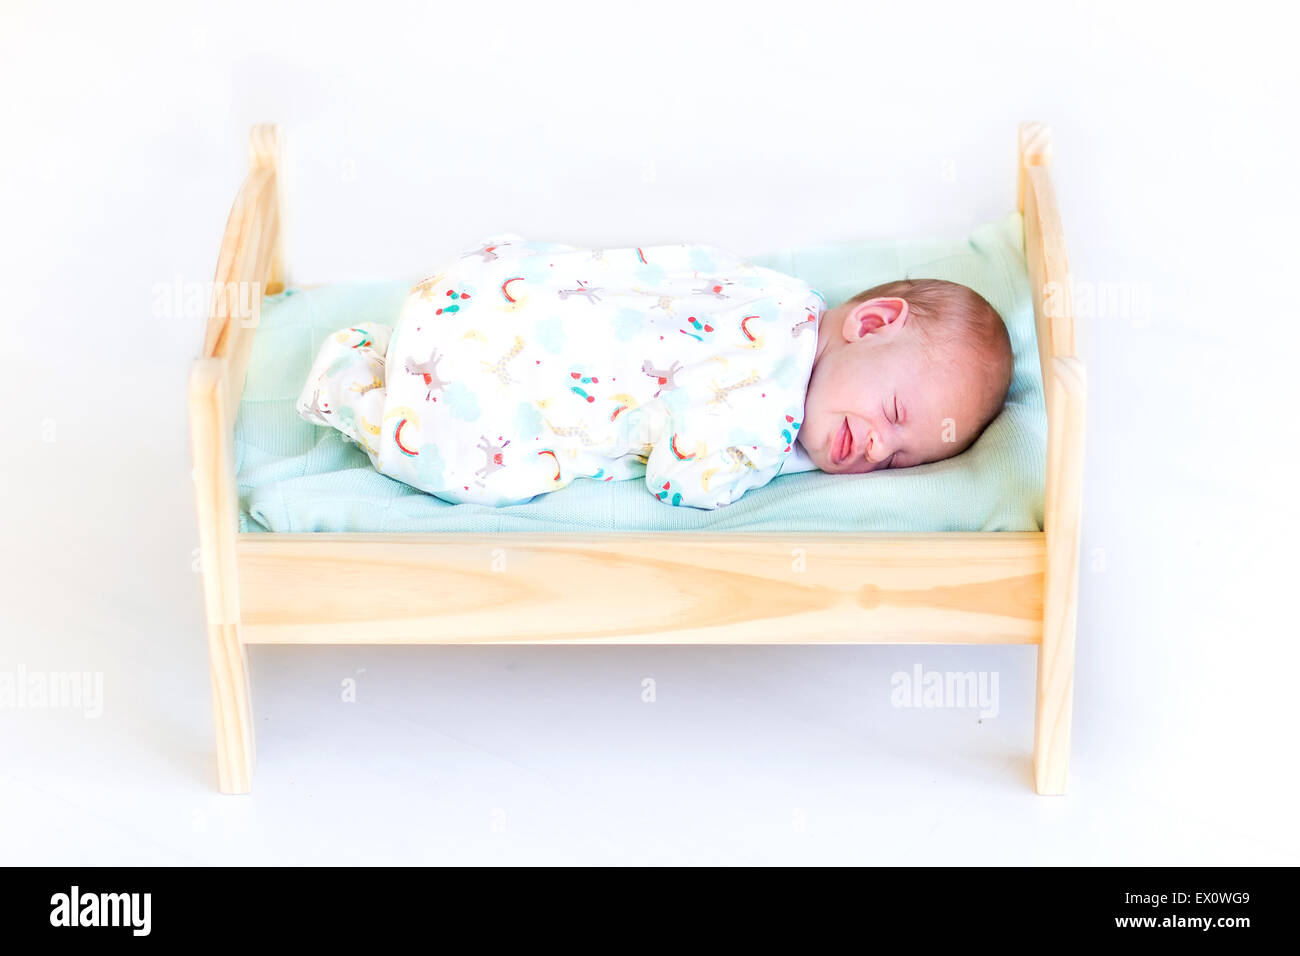 Sweet bébé nouveau-né de dormir dans un lit de jouets Banque D'Images